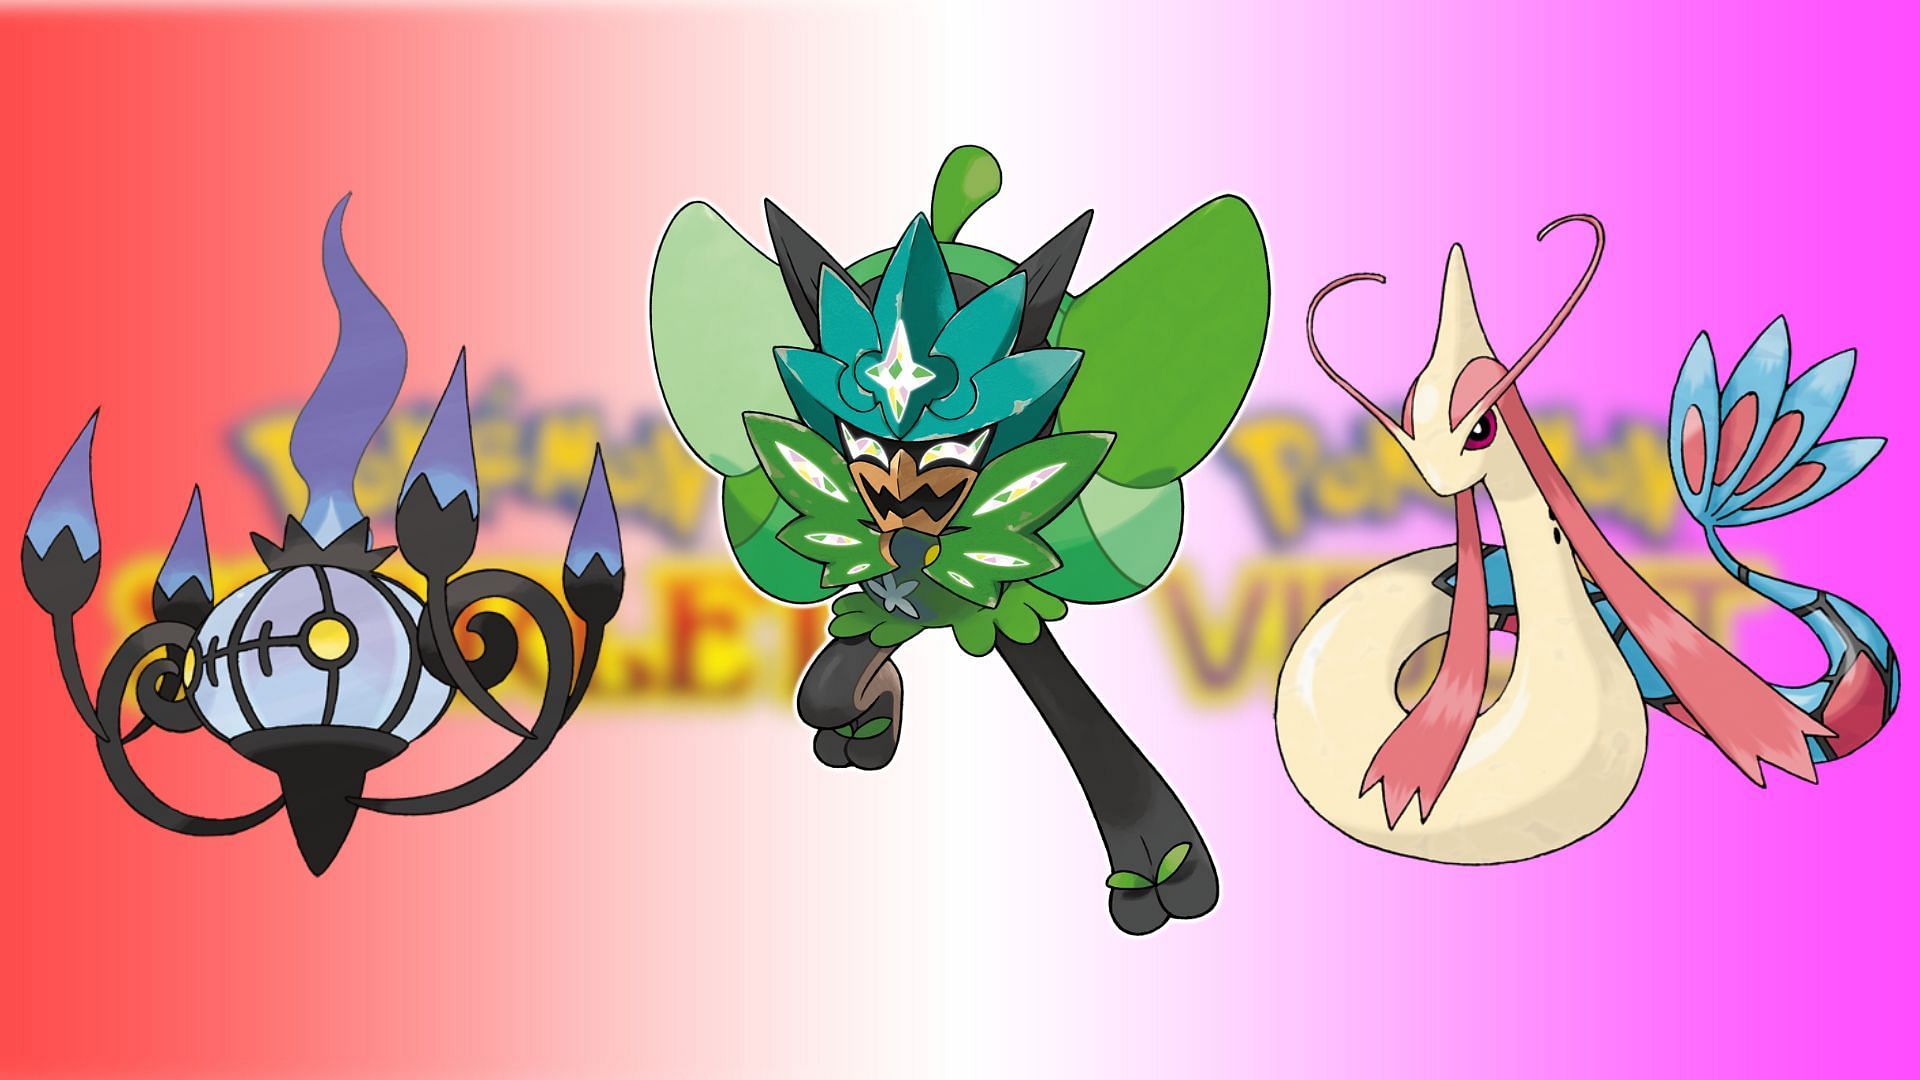 I 10 Pokemon più potenti che possono essere catturati con la maschera Pokemon cremisi e viola-verdastro